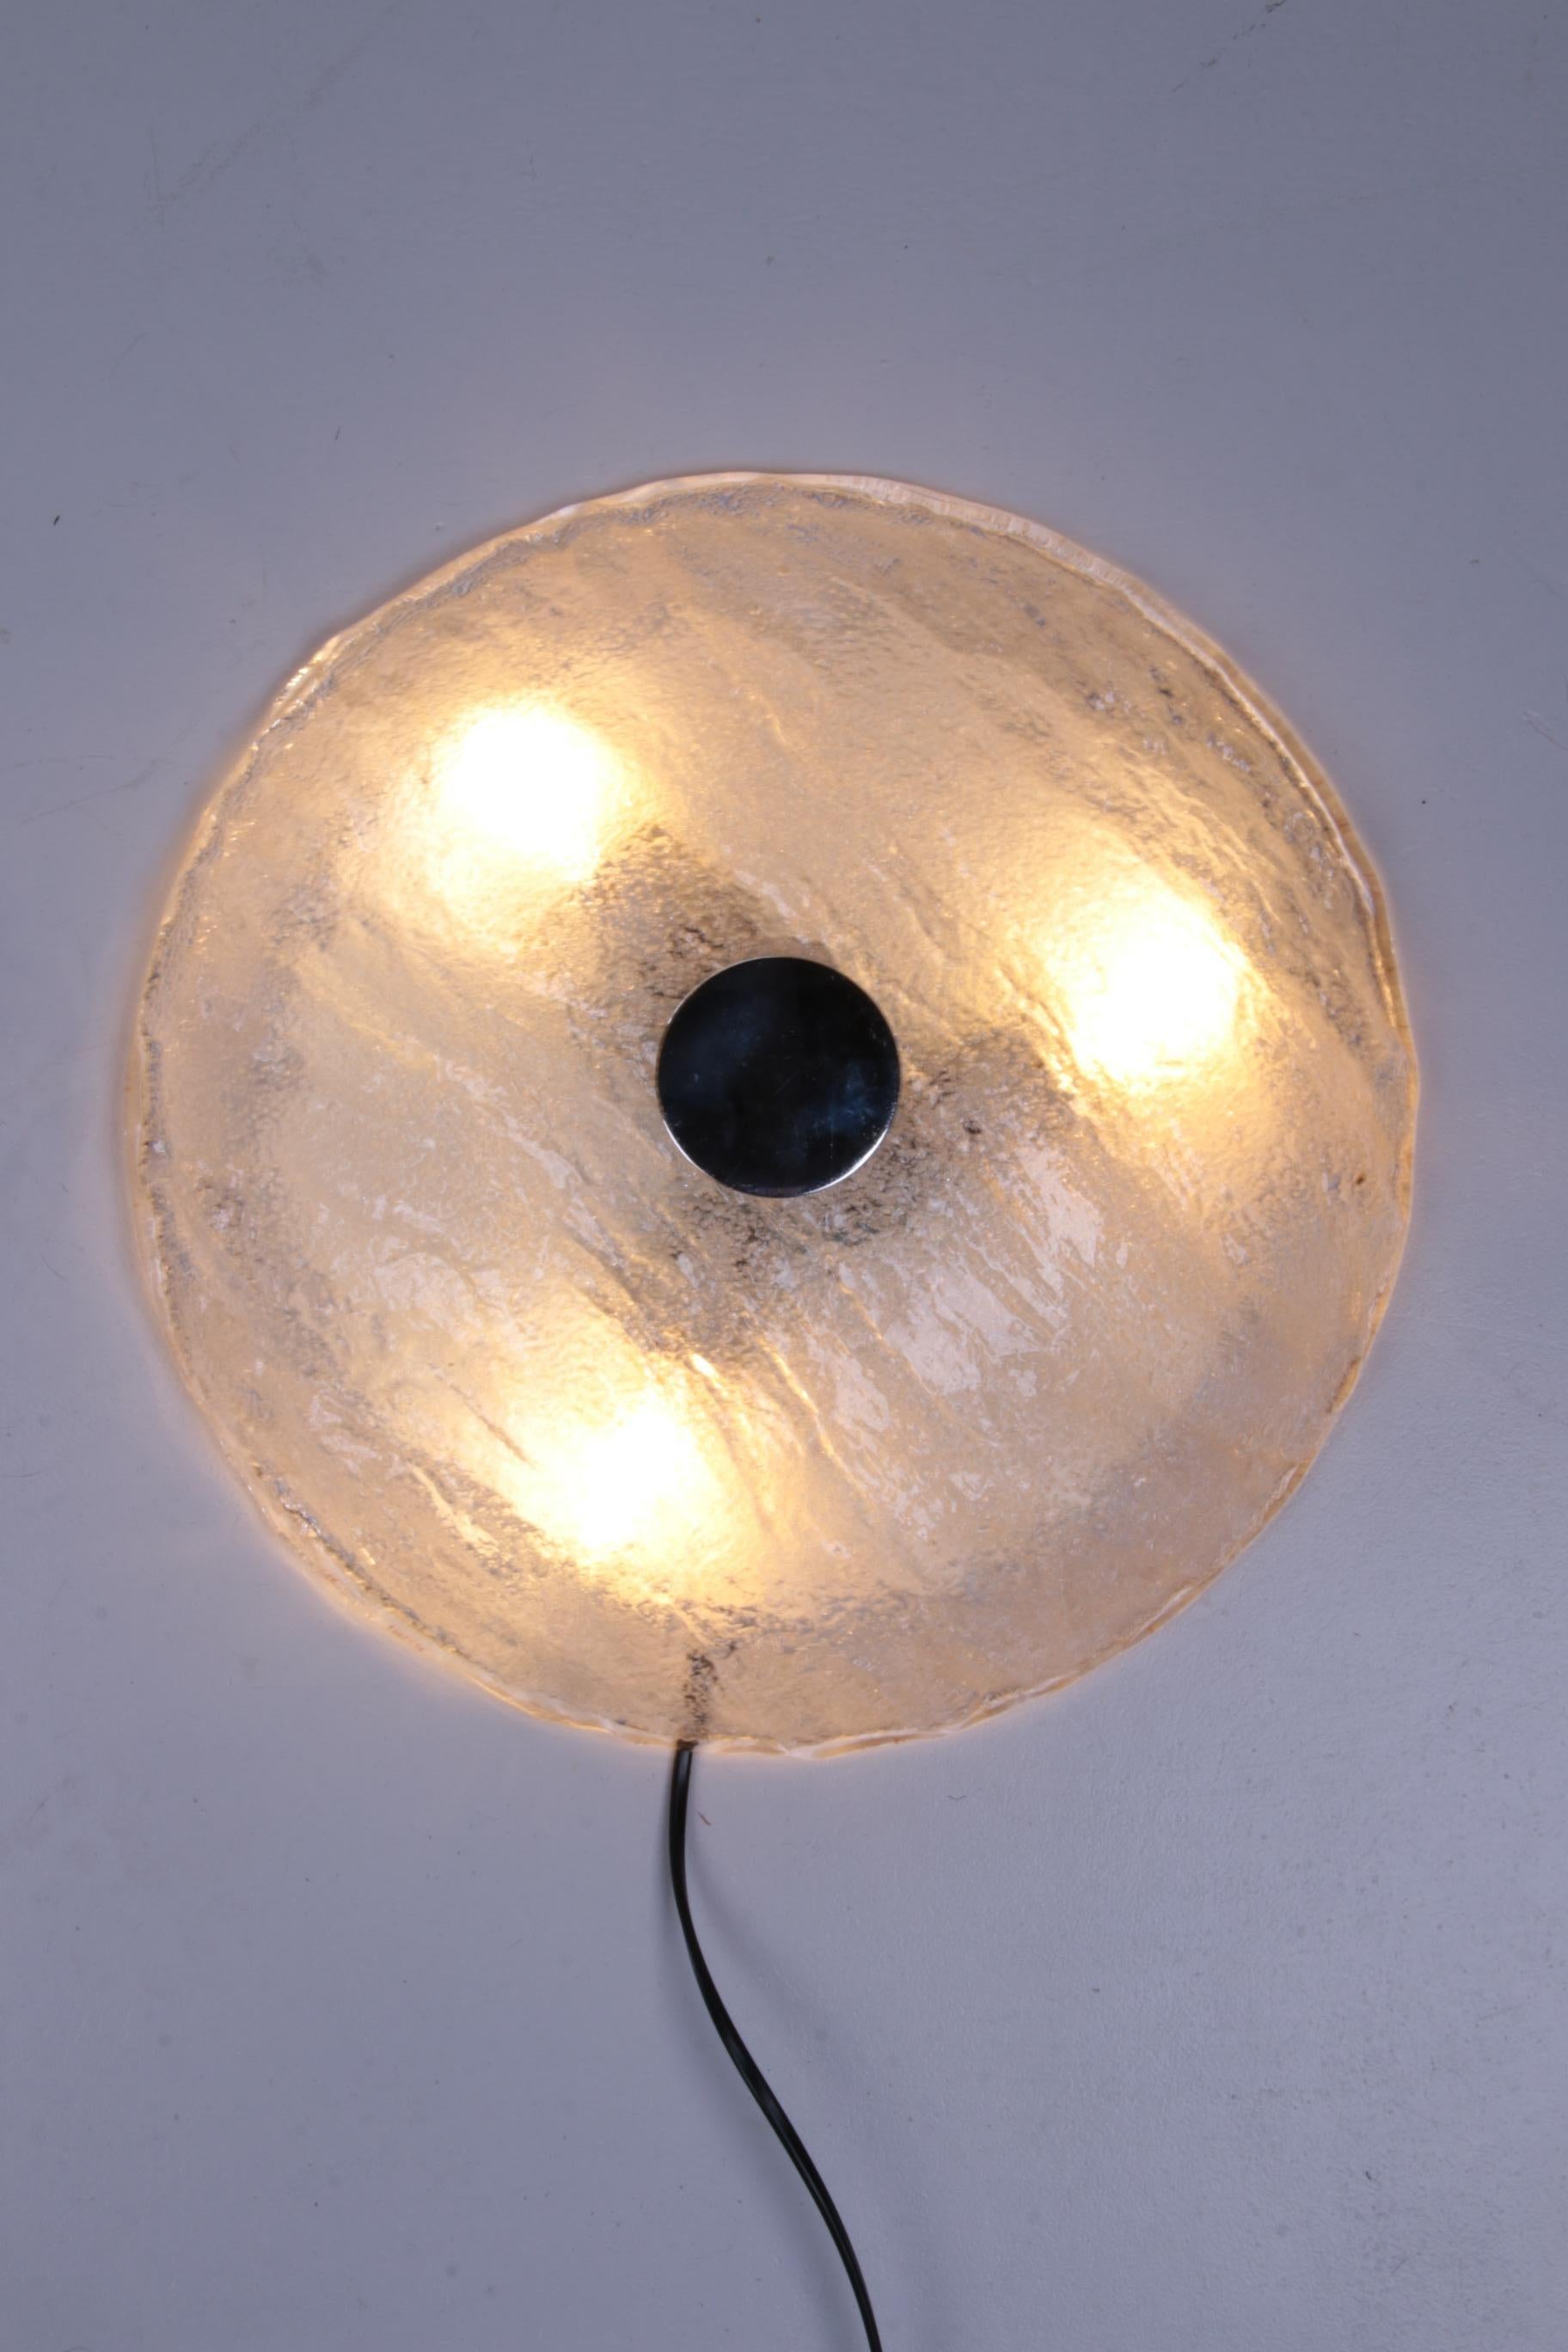 Schöne Deckenlampe aus Murano-Glas.

Die Leuchte ist aus Metall und hat einen großen Lampenschirm aus dickwandigem, so genanntem 